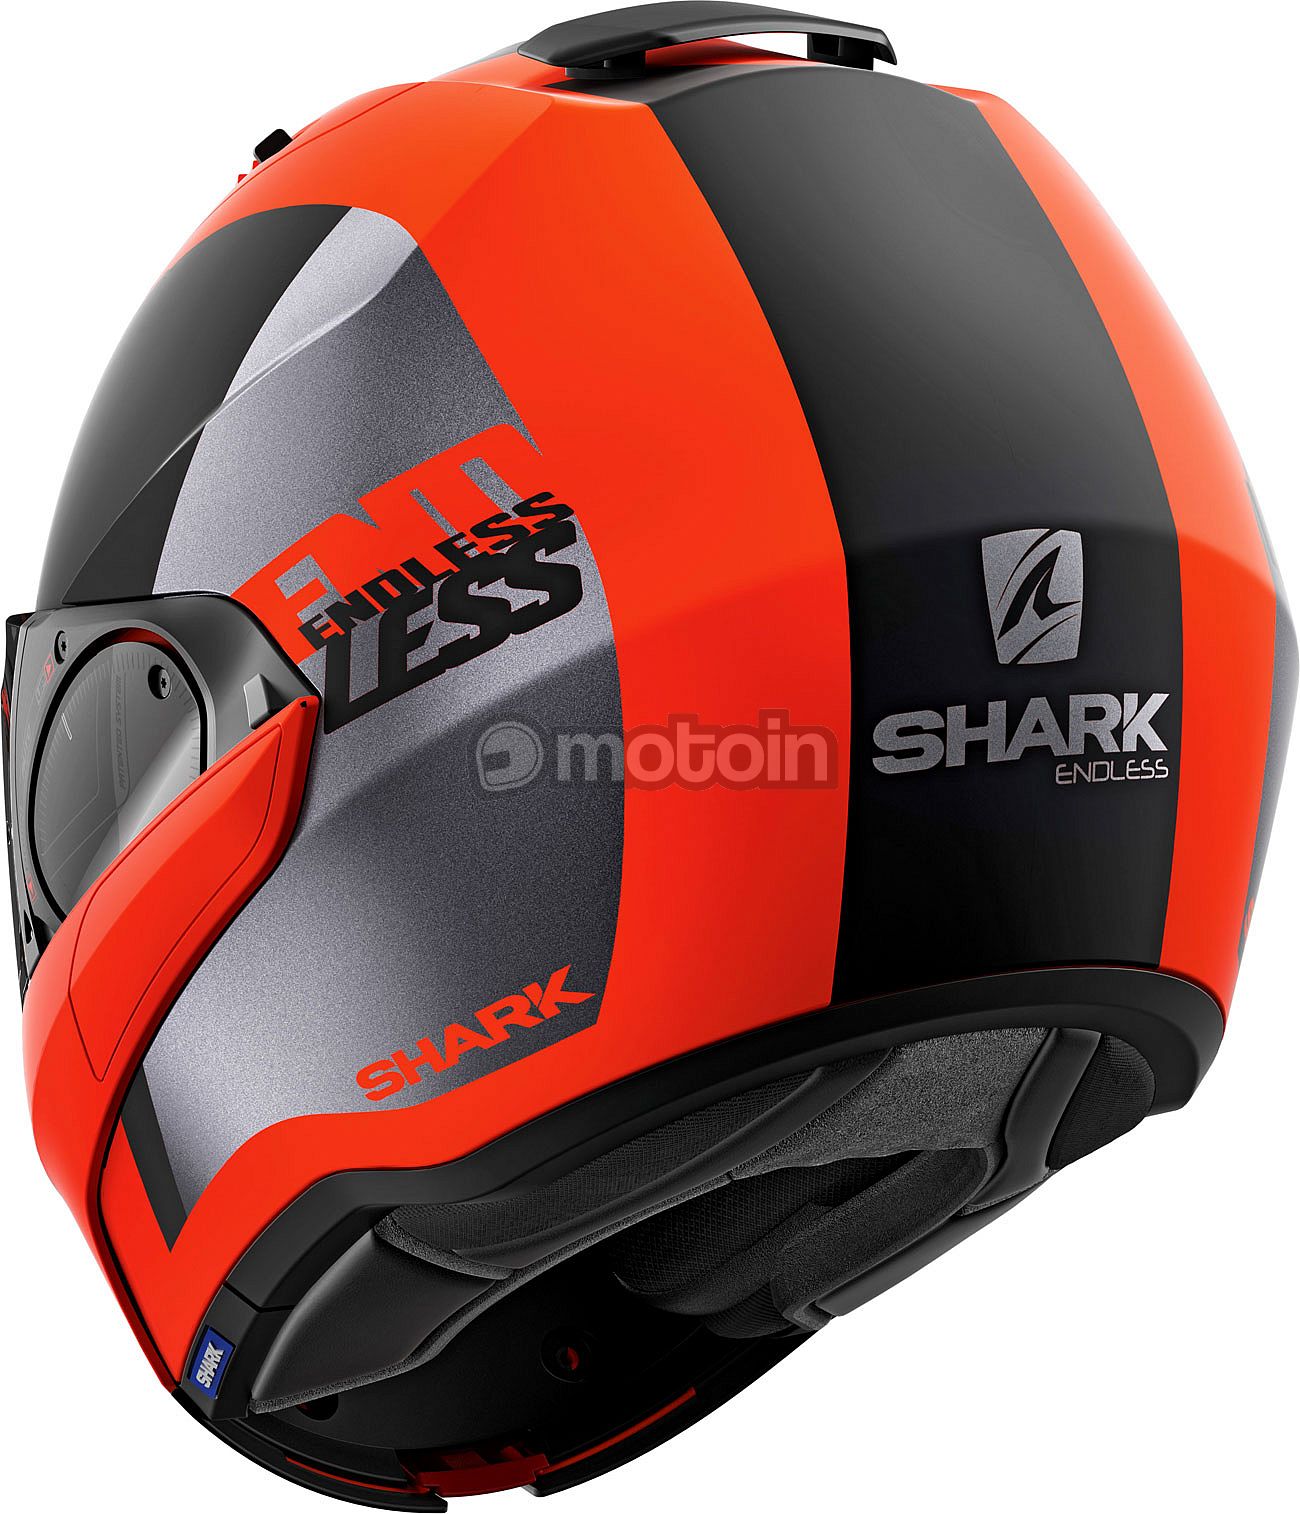 Shark Evo Endless, casco modular - motoin.de